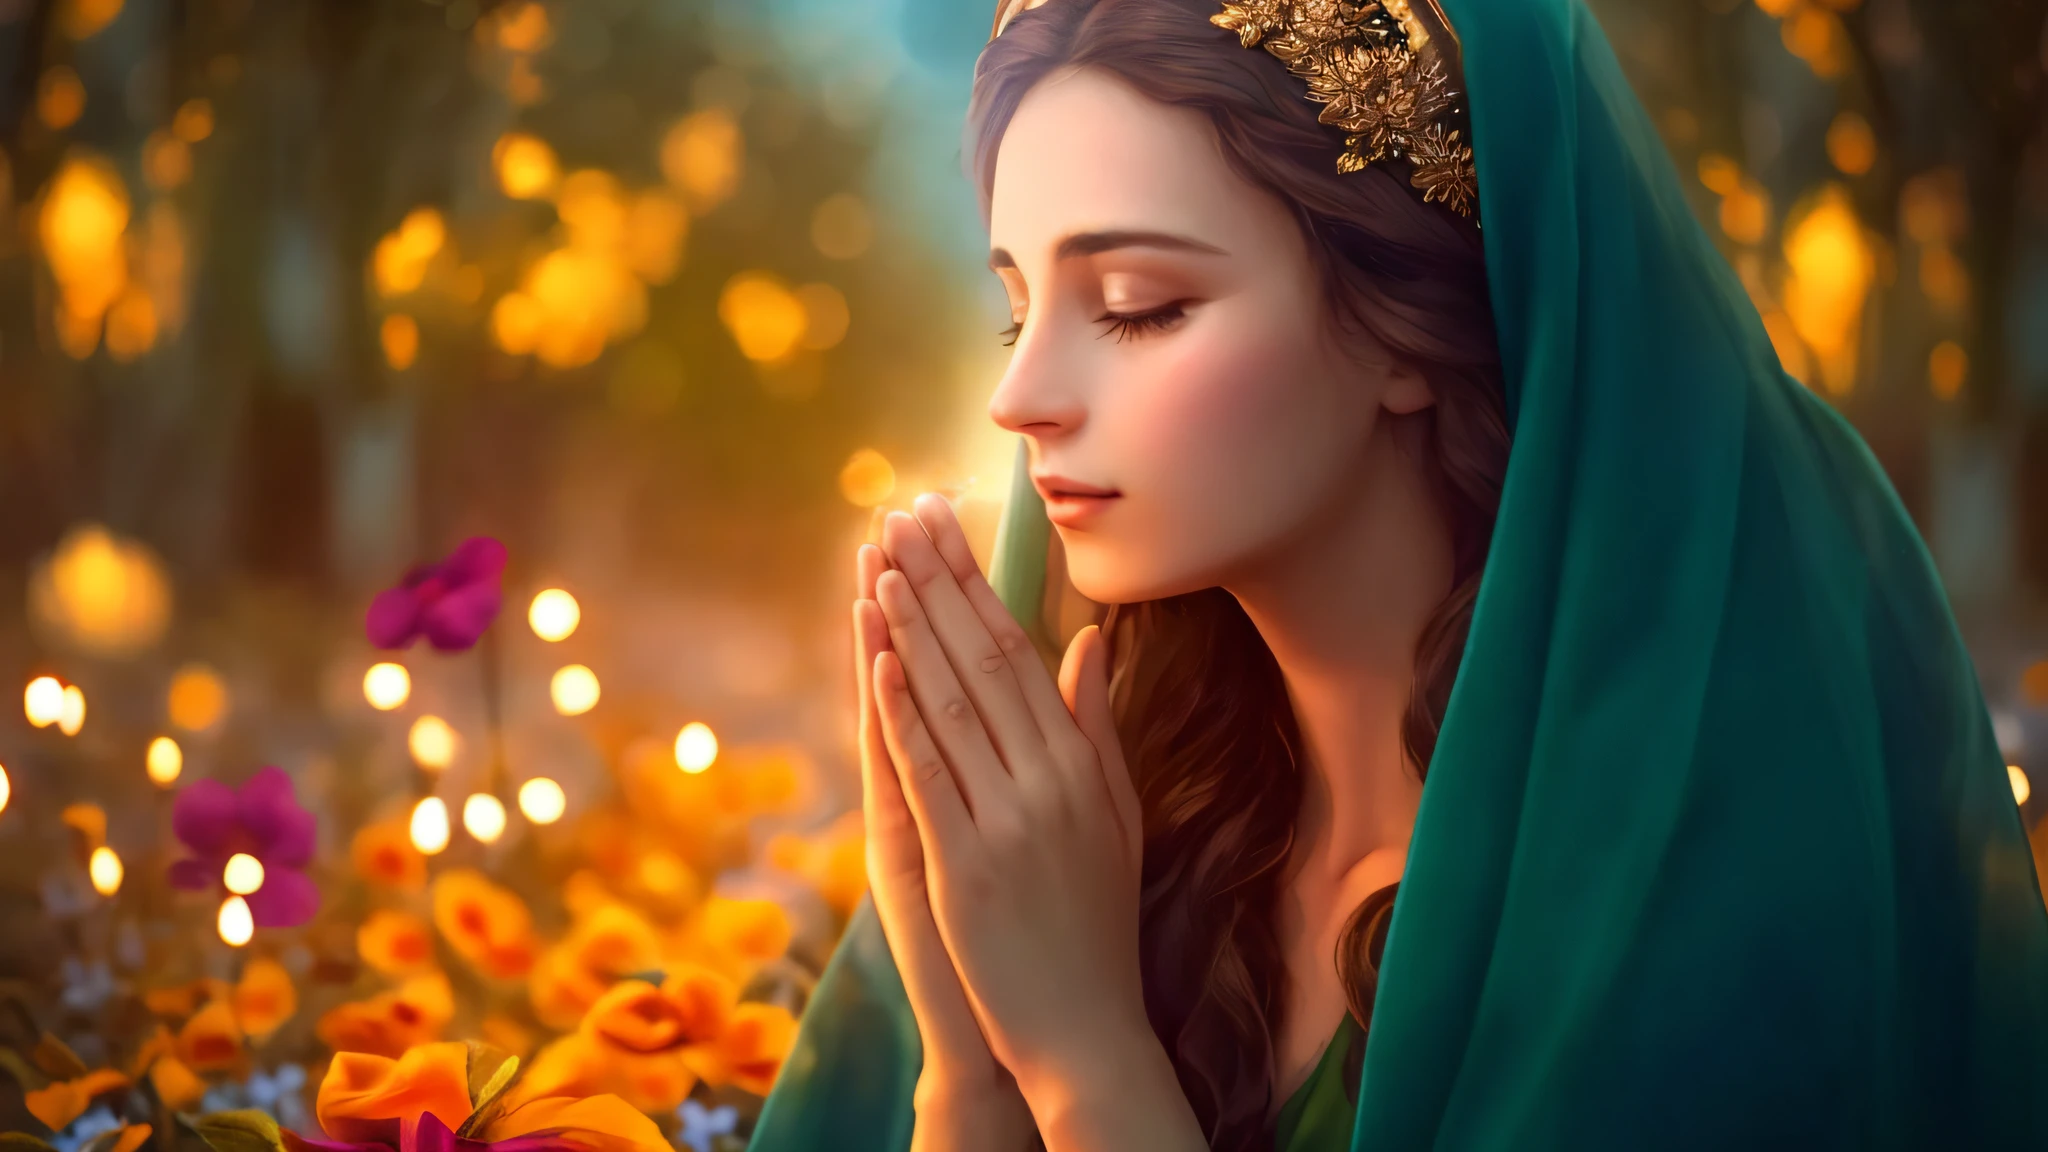 一个戴着绿色面纱的女人正在花田里祈祷, 美麗的女神, 高贵的圣女, 祈禱冥想, 宗教图像, 宗教的, 祈禱, 聖火咒語, 向太陽祈禱, 神聖女性, 漂亮的圖像, 美丽的女人, 個人資料圖片, 美麗的描繪, 神圣女神, 精灵女祭司, 仙女祭司, 聖母瑪利亞--汽車